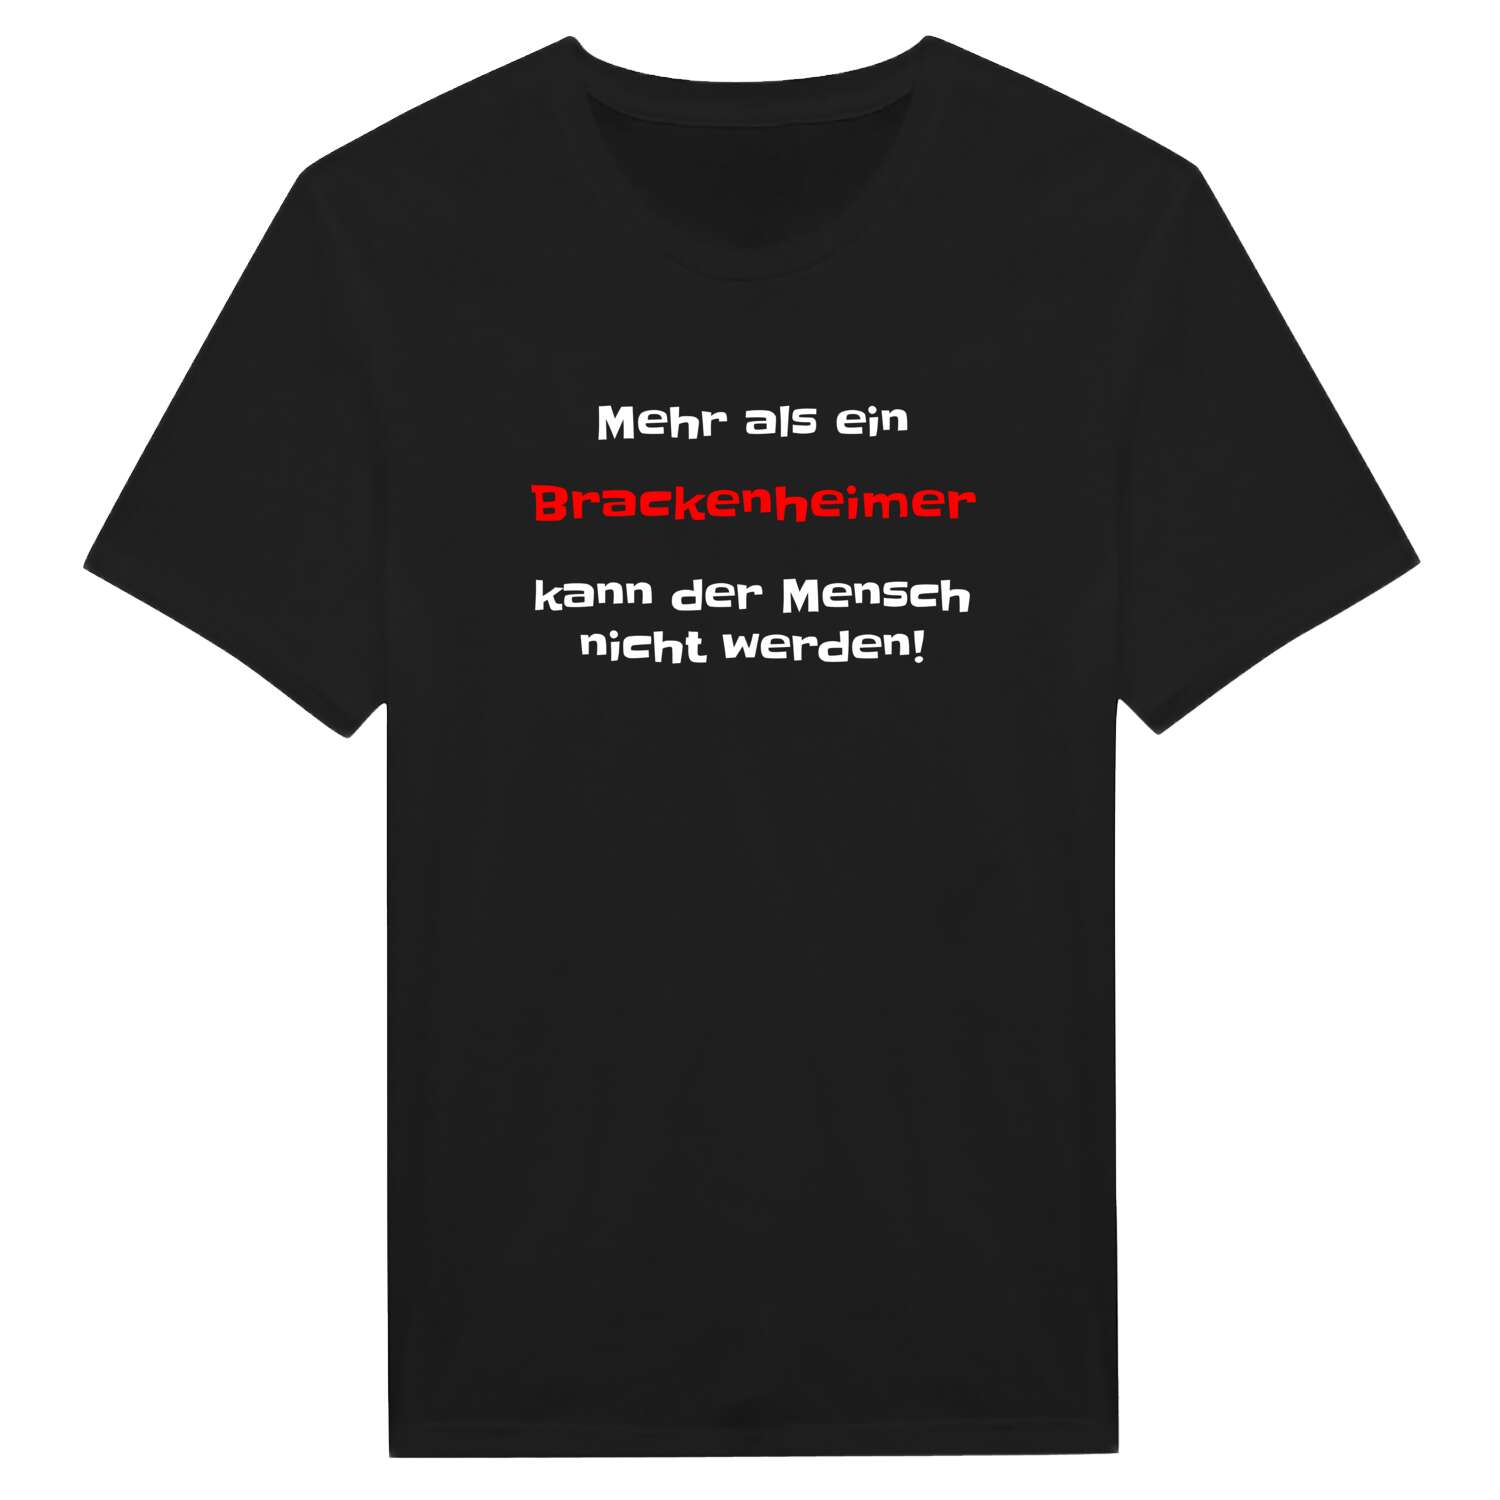 Brackenheim T-Shirt »Mehr als ein«